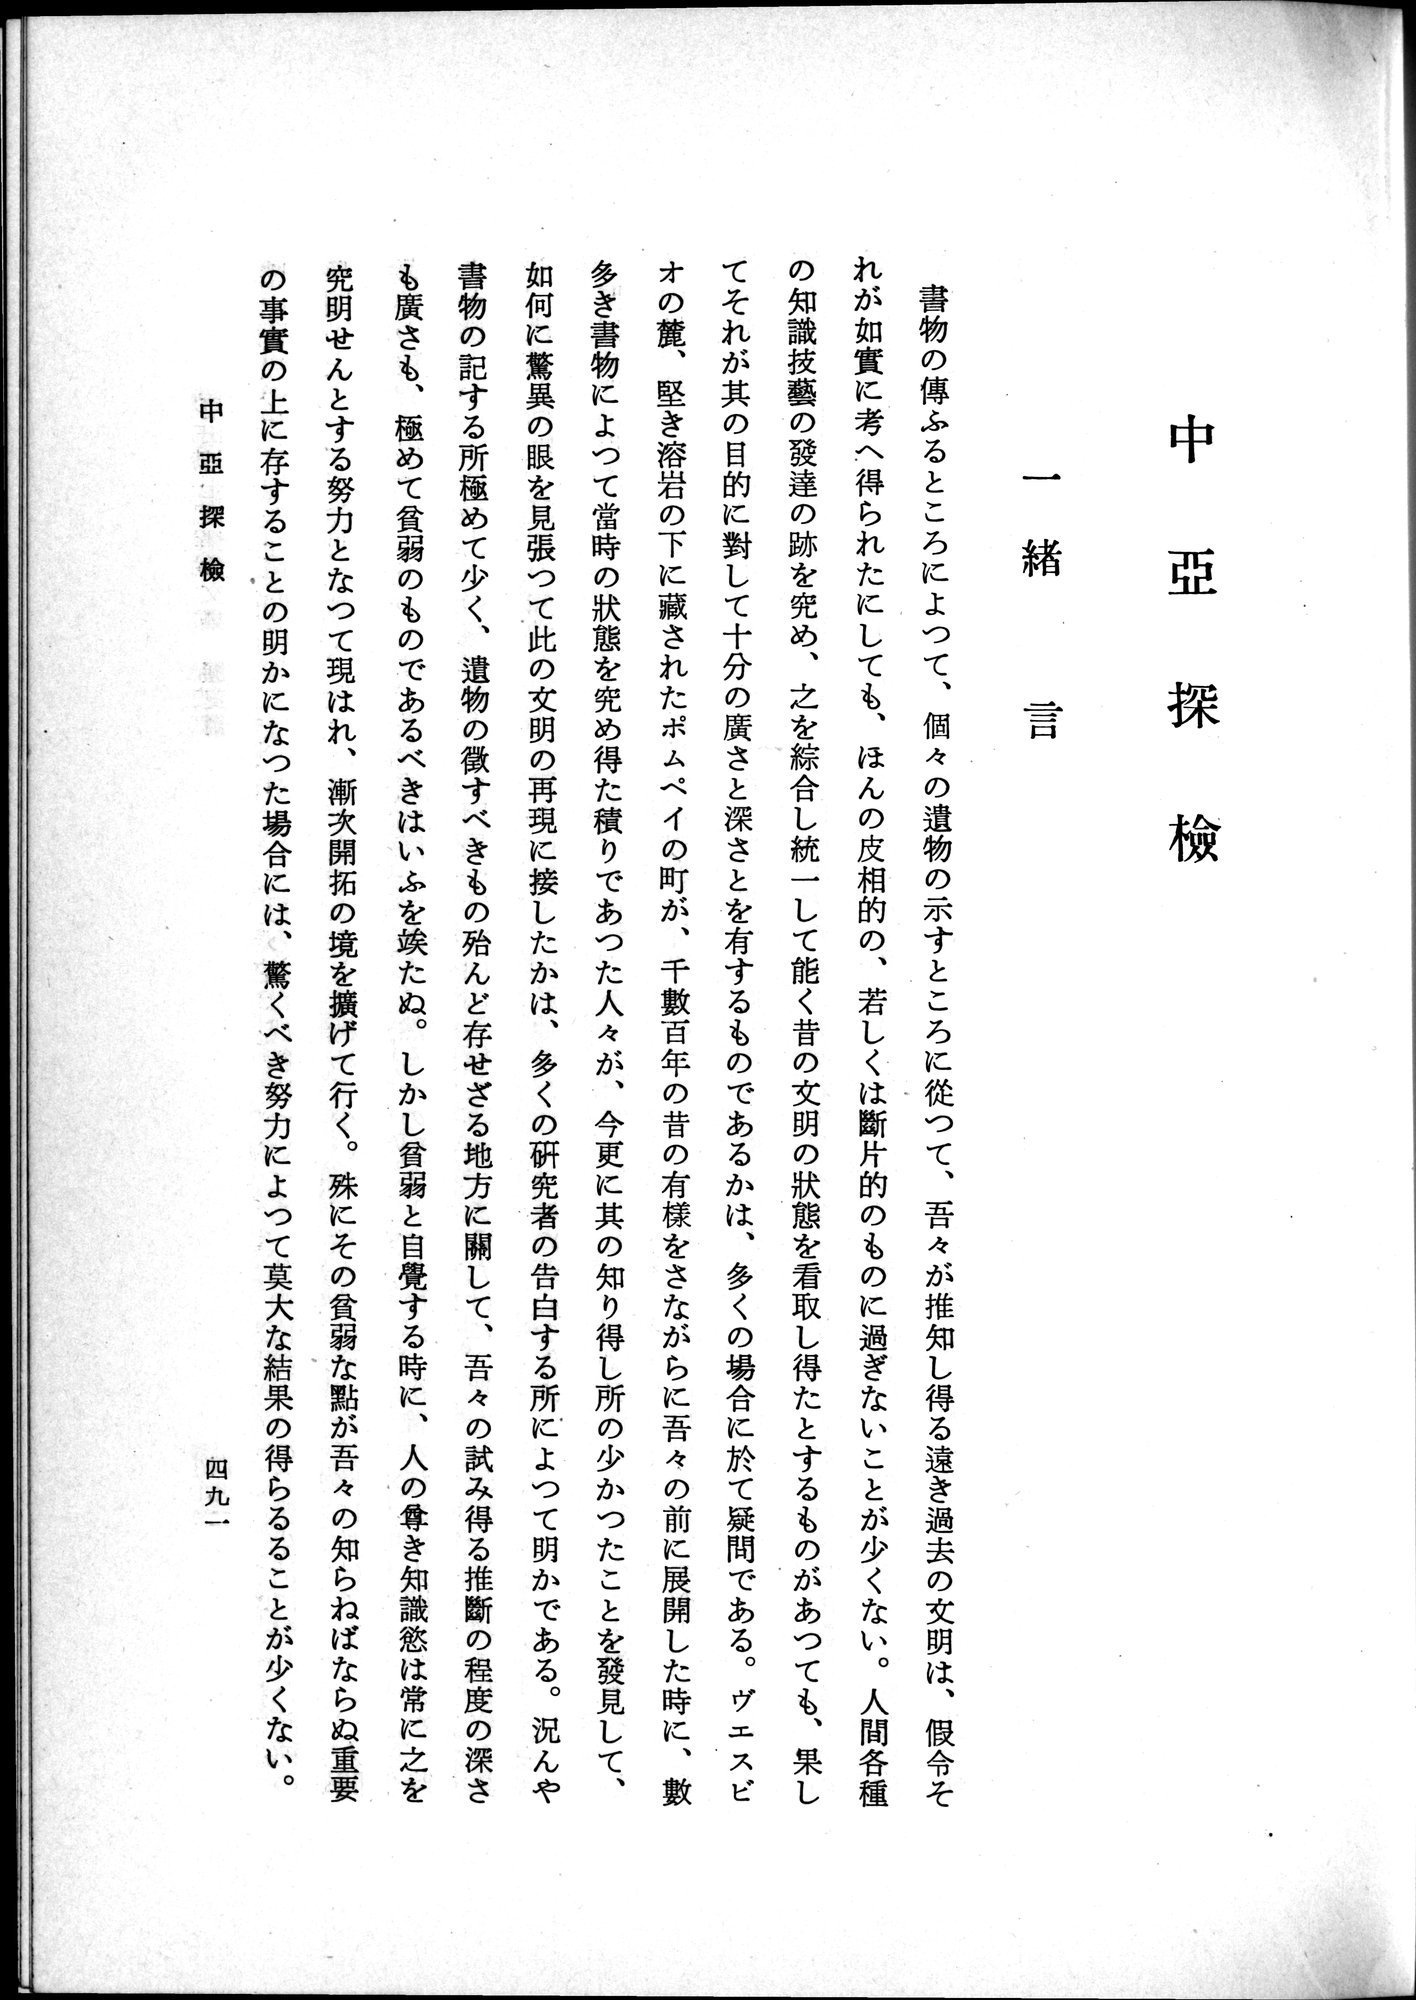 羽田博士史学論文集 : vol.1 / Page 529 (Grayscale High Resolution Image)